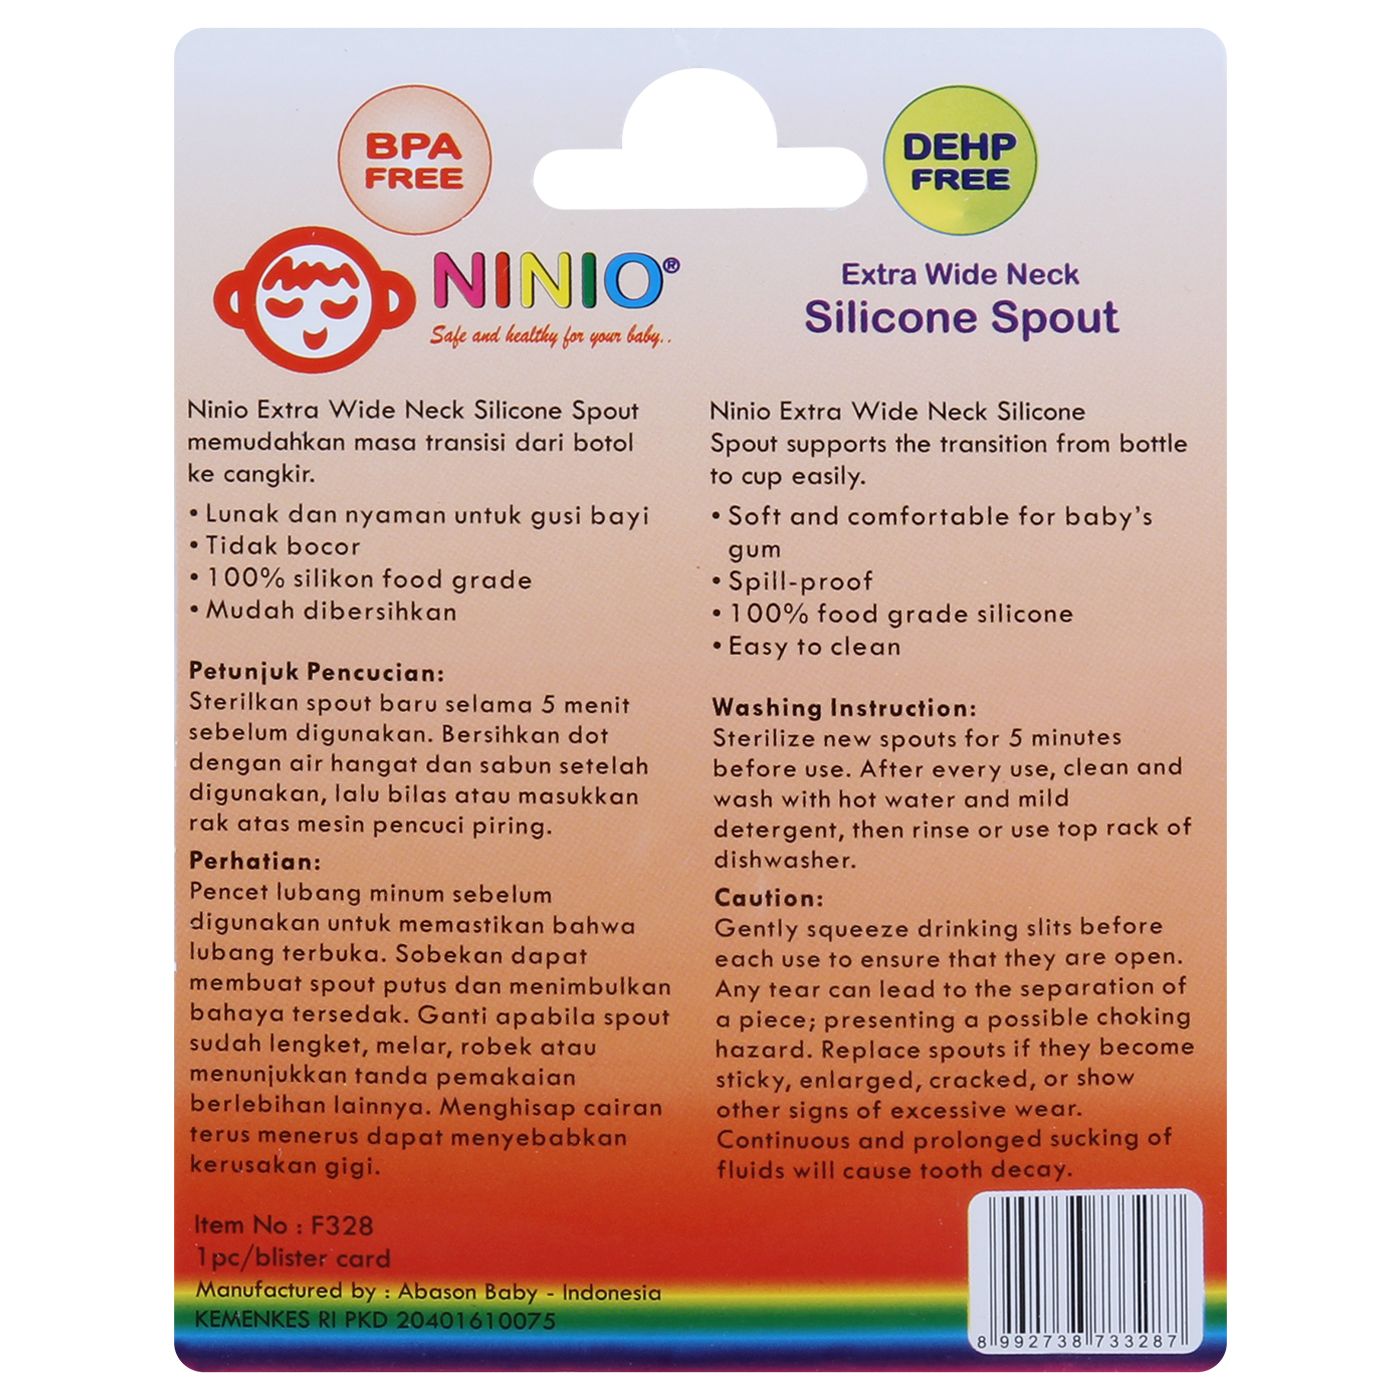 Ninio Extra Wide Neck Silicone Spout - 2